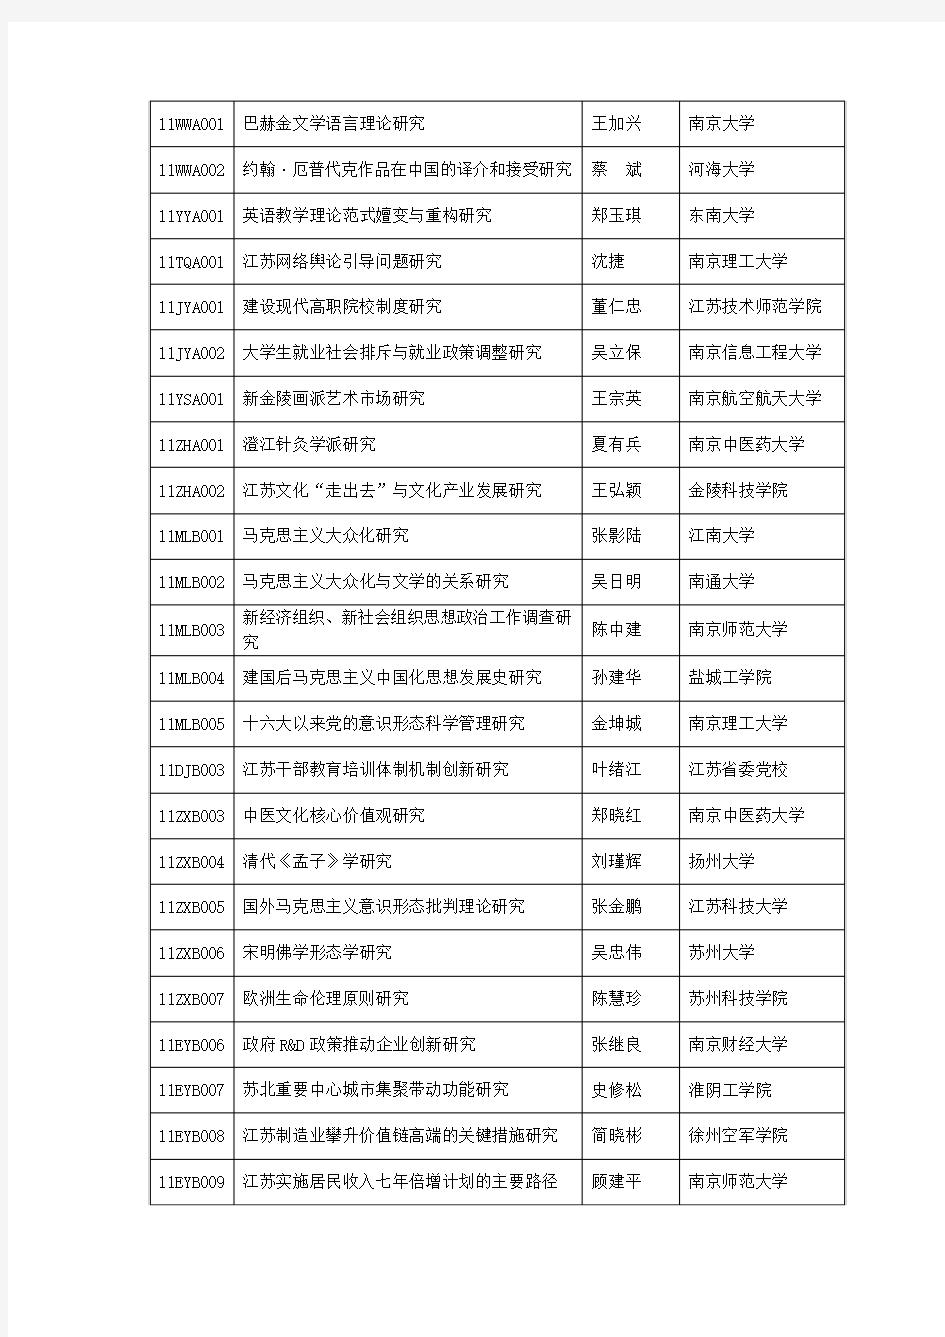 2011年度江苏省社科基金项目立项课题名单